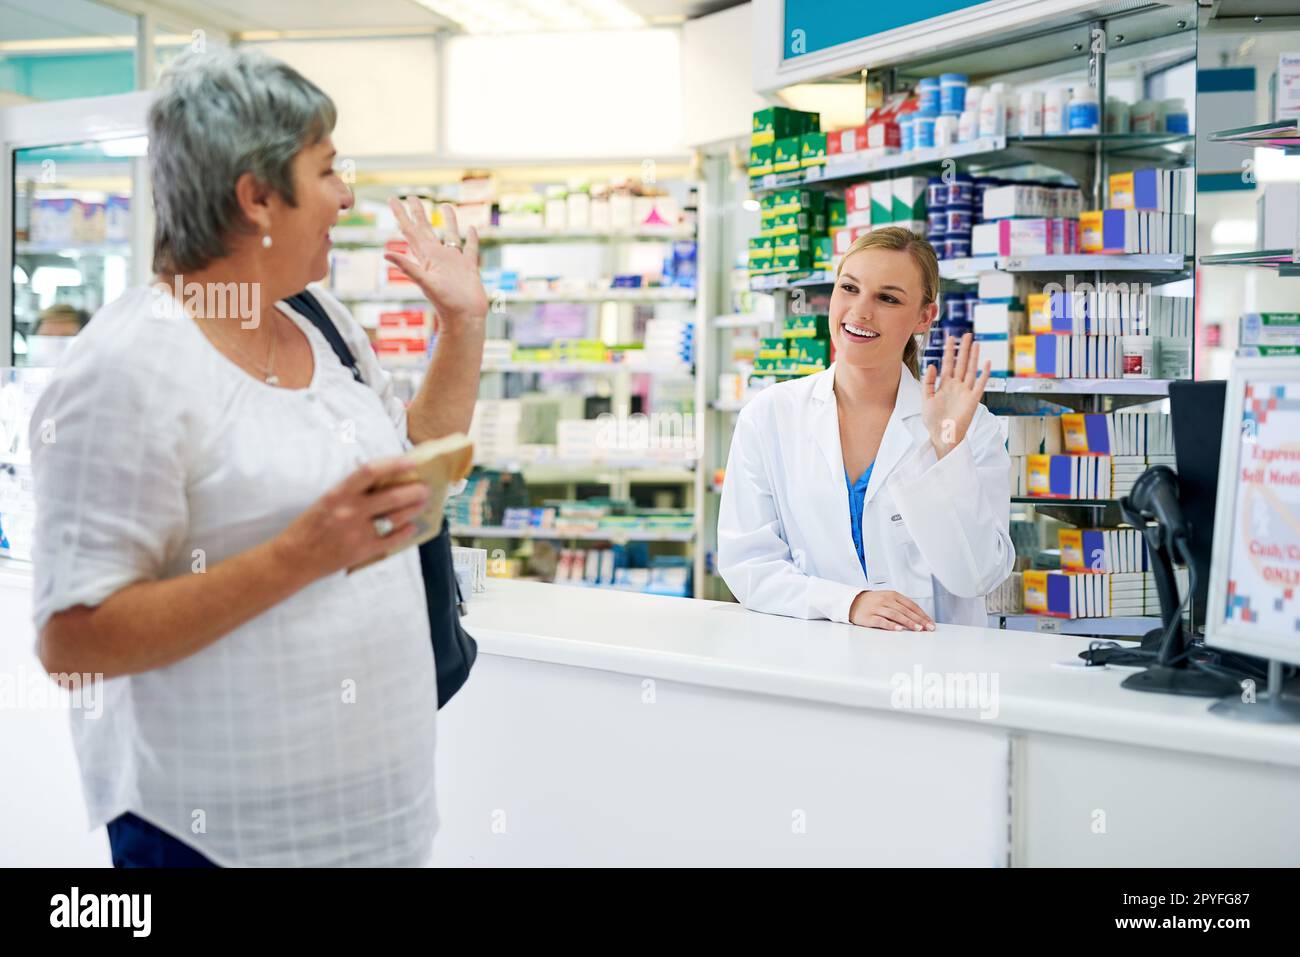 Grazie per il servizio meraviglioso come sempre. una donna matura felice che lascia una farmacia dopo l'acquisto del farmaco. Foto Stock